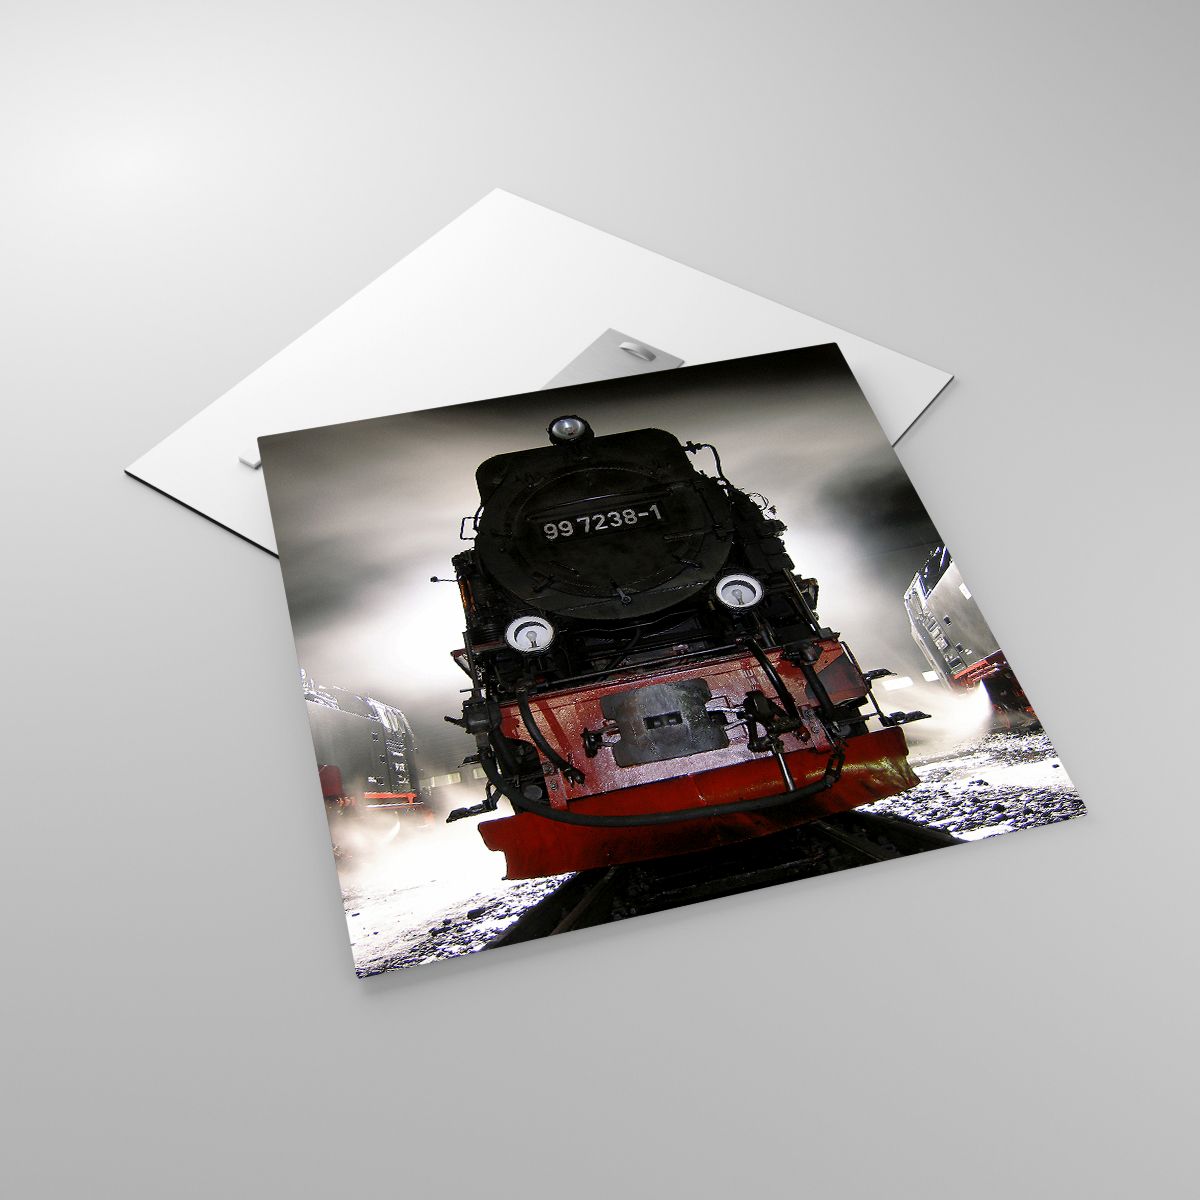 Glasbild Dampflokomotive, Glasbild Bahnhof, Glasbild Automobil, Glasbild Thora, Glasbild Abstellgleis